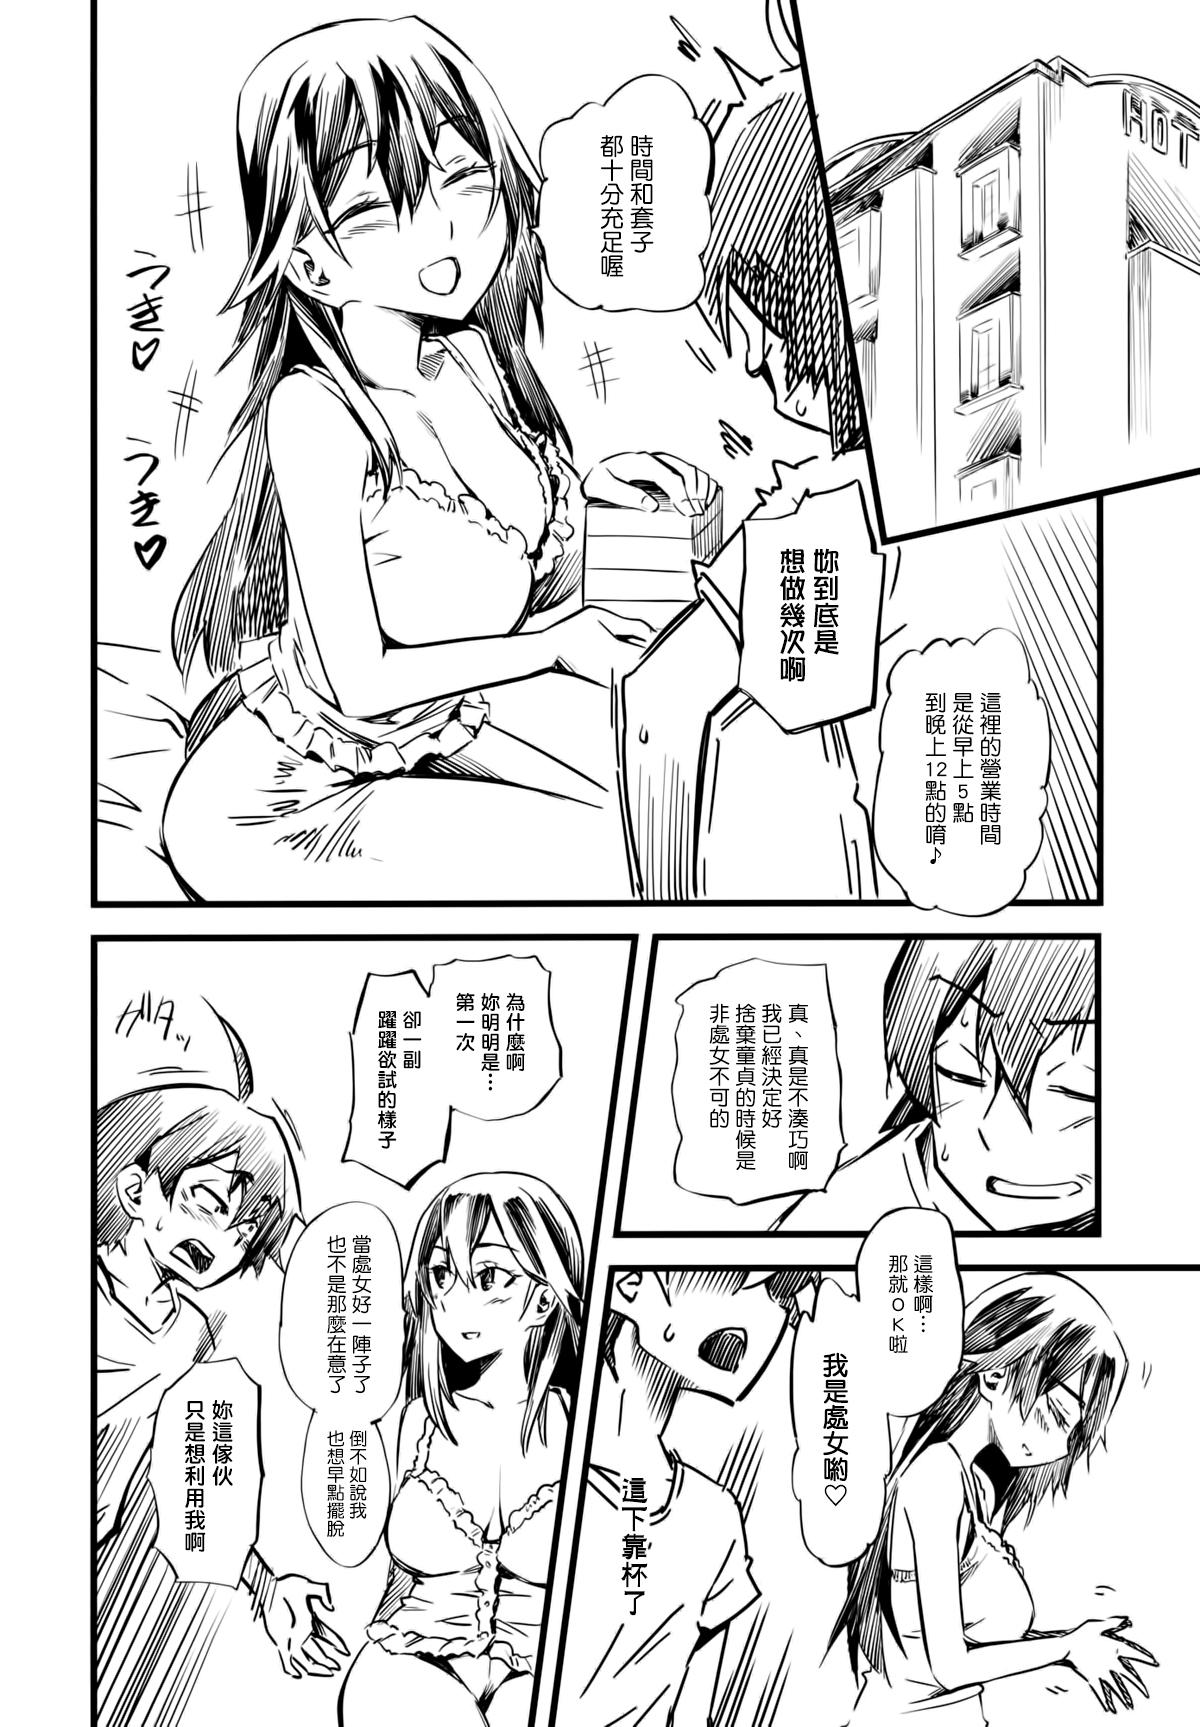 Cuck Service Time - Yahari ore no seishun love come wa machigatteiru Climax - Page 5